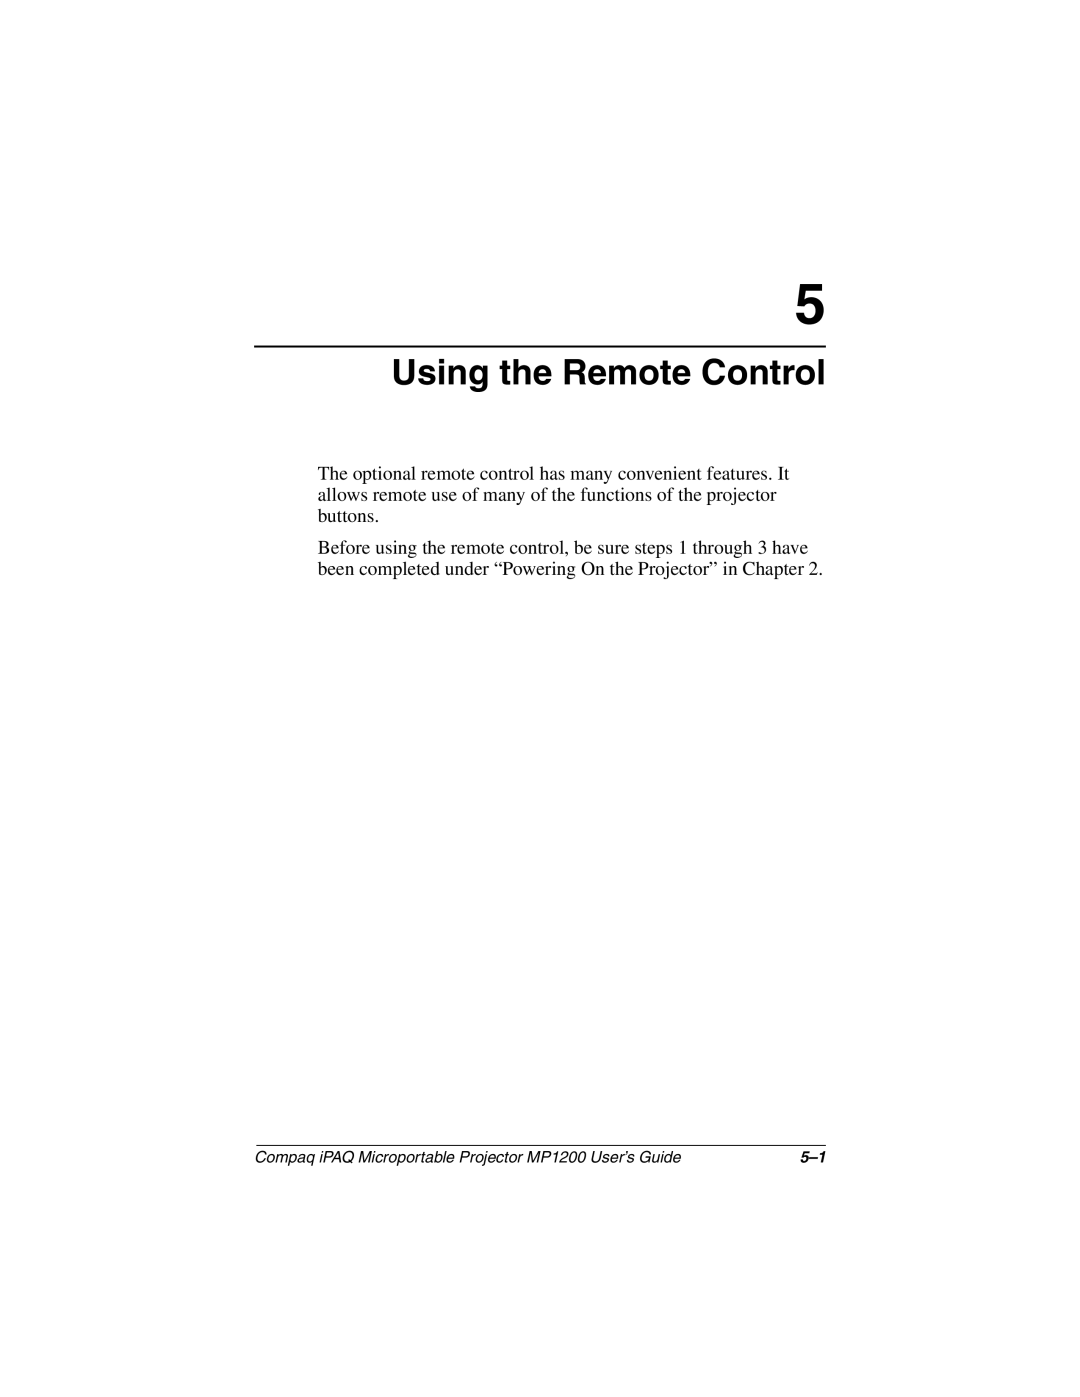 Compaq MP1200 manual Using the Remote Control 